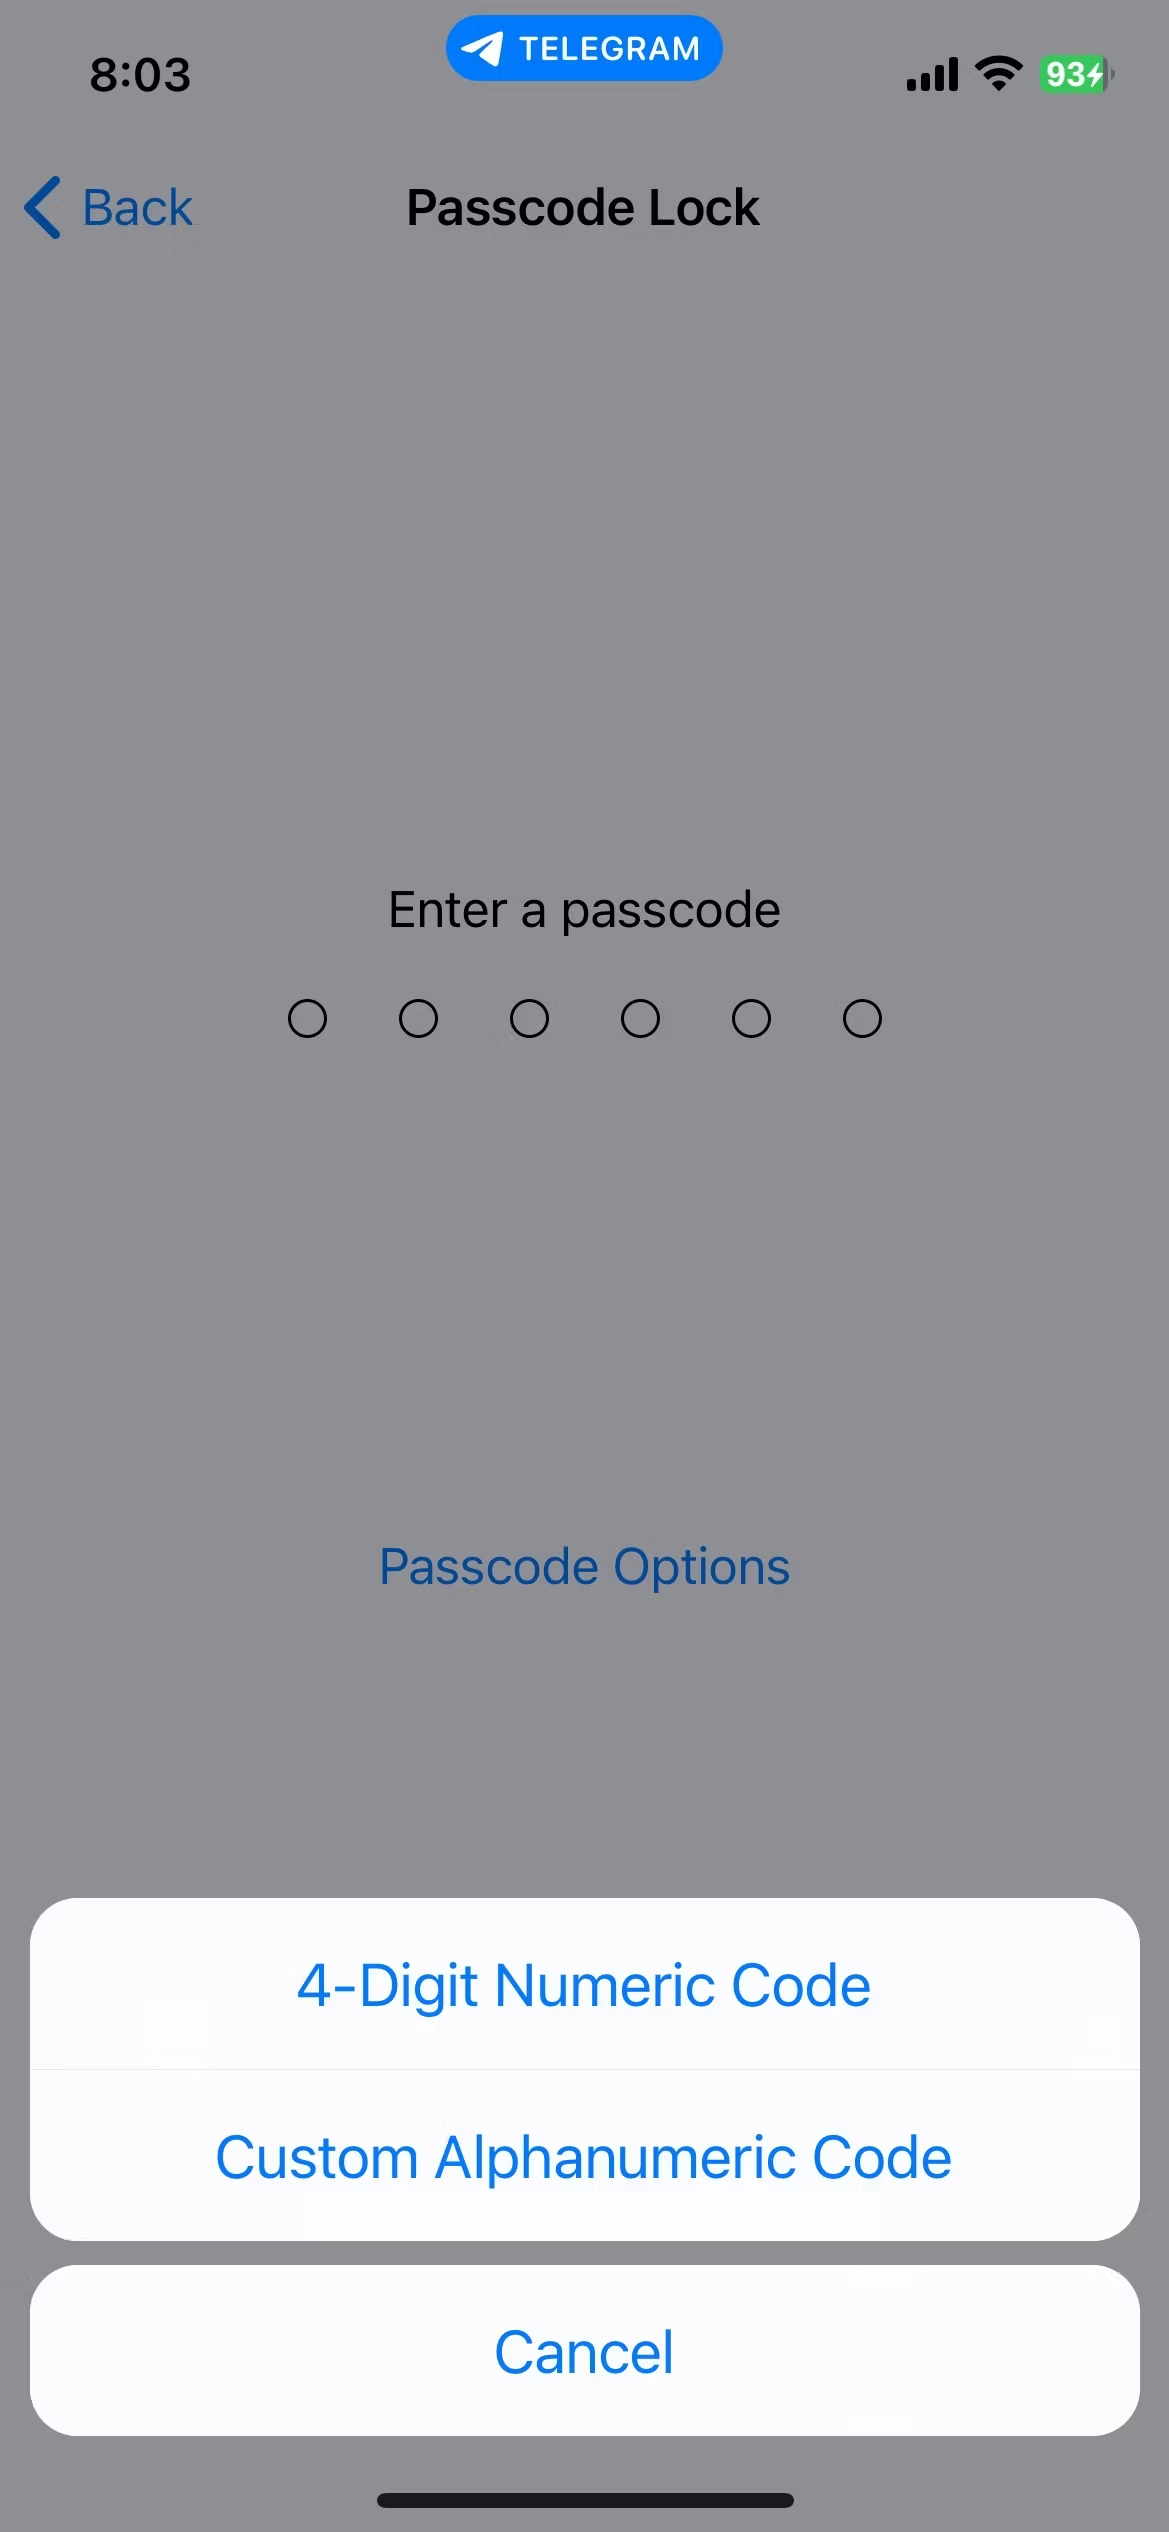 passcode-options-on-telegram